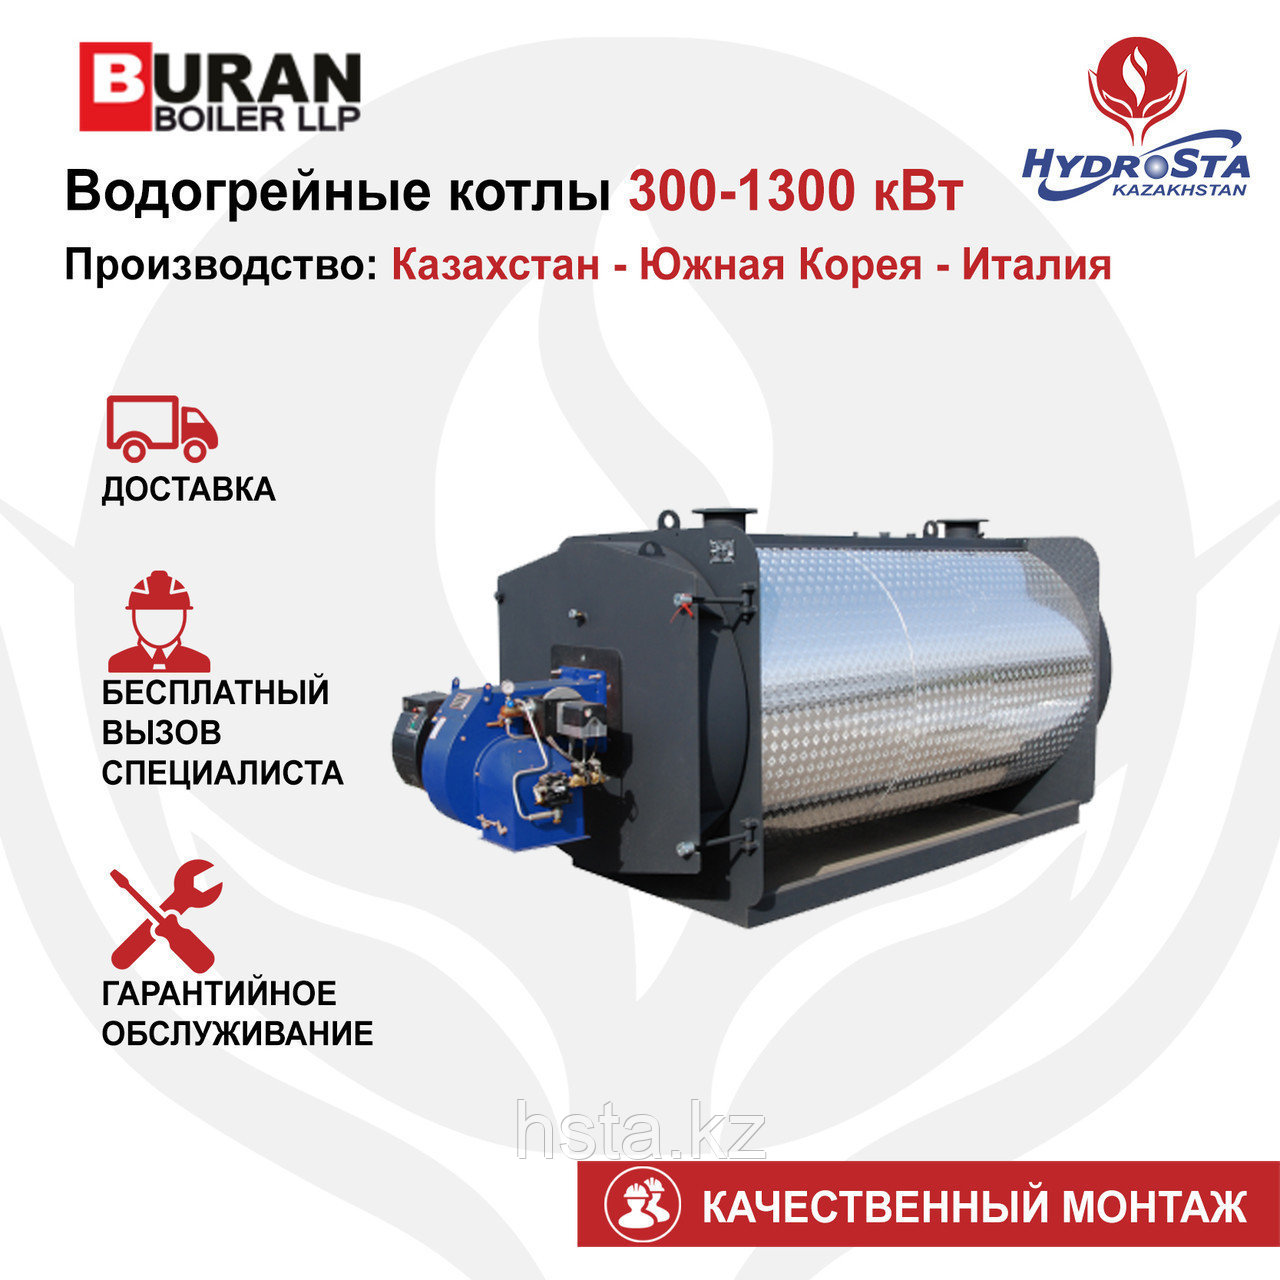 Котел одноконтурный Cronos BB-1300 (Buran Boiler) 1300кВт (цена без горелки)